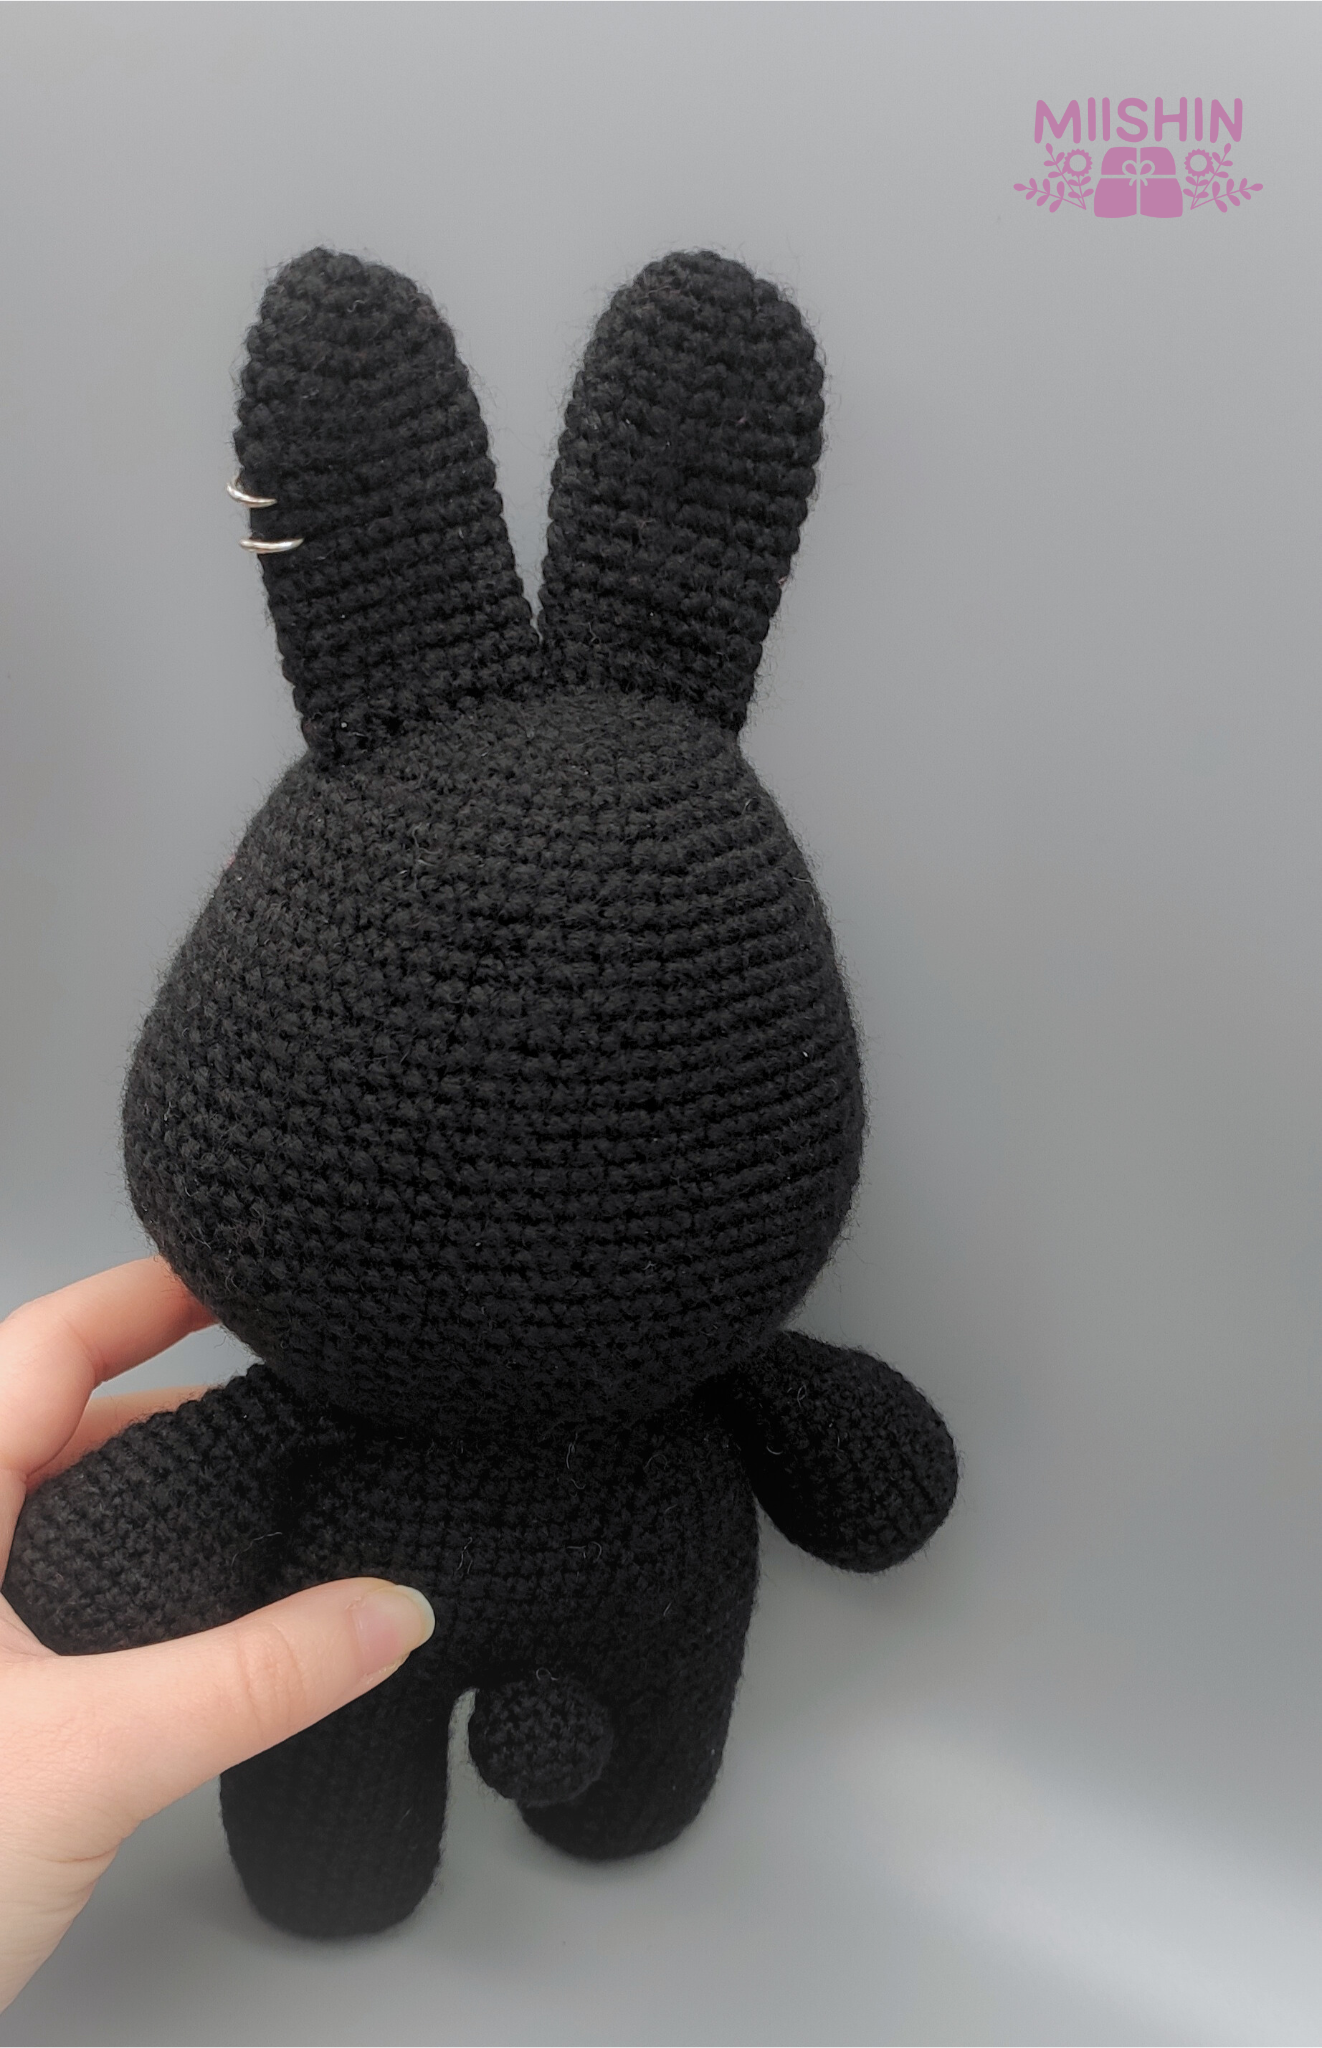 Mito Rabbit from ateez, crochet plushie, handmade, kpop, original gift